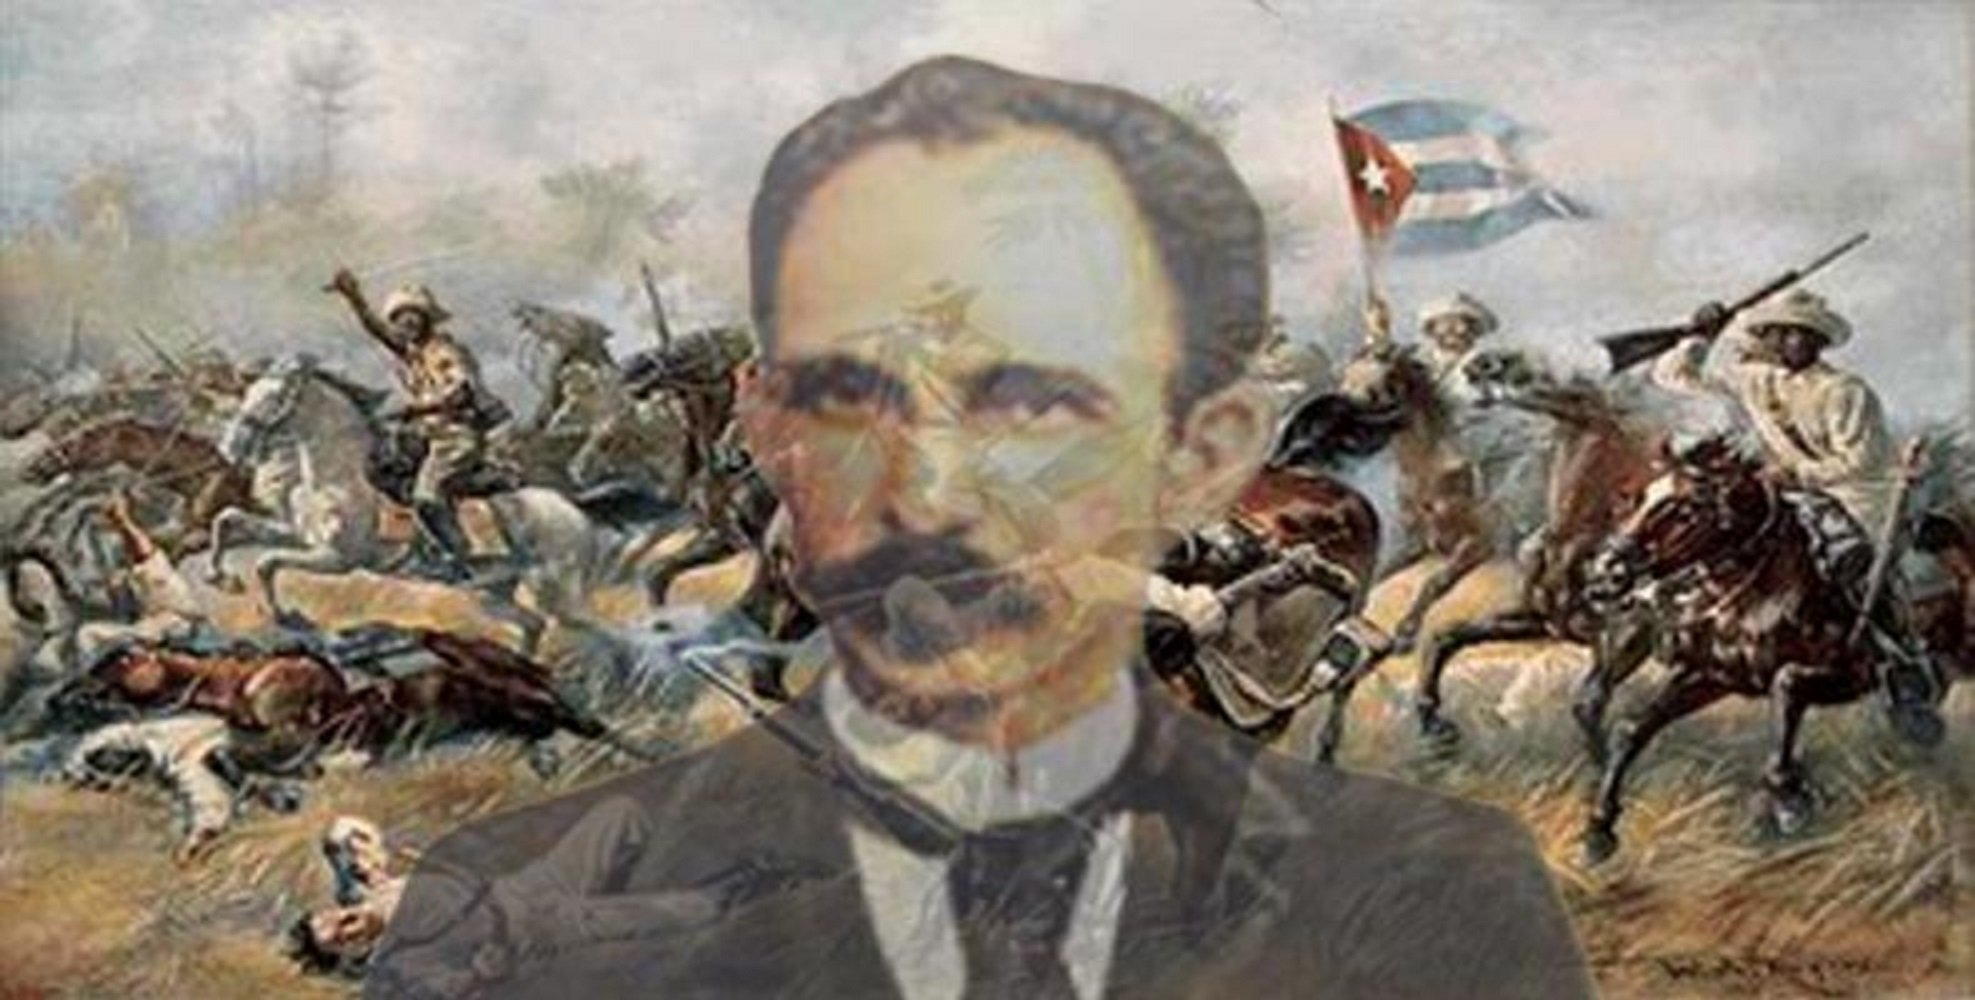 El valencià José Martí funda el partit de la independència de Cuba